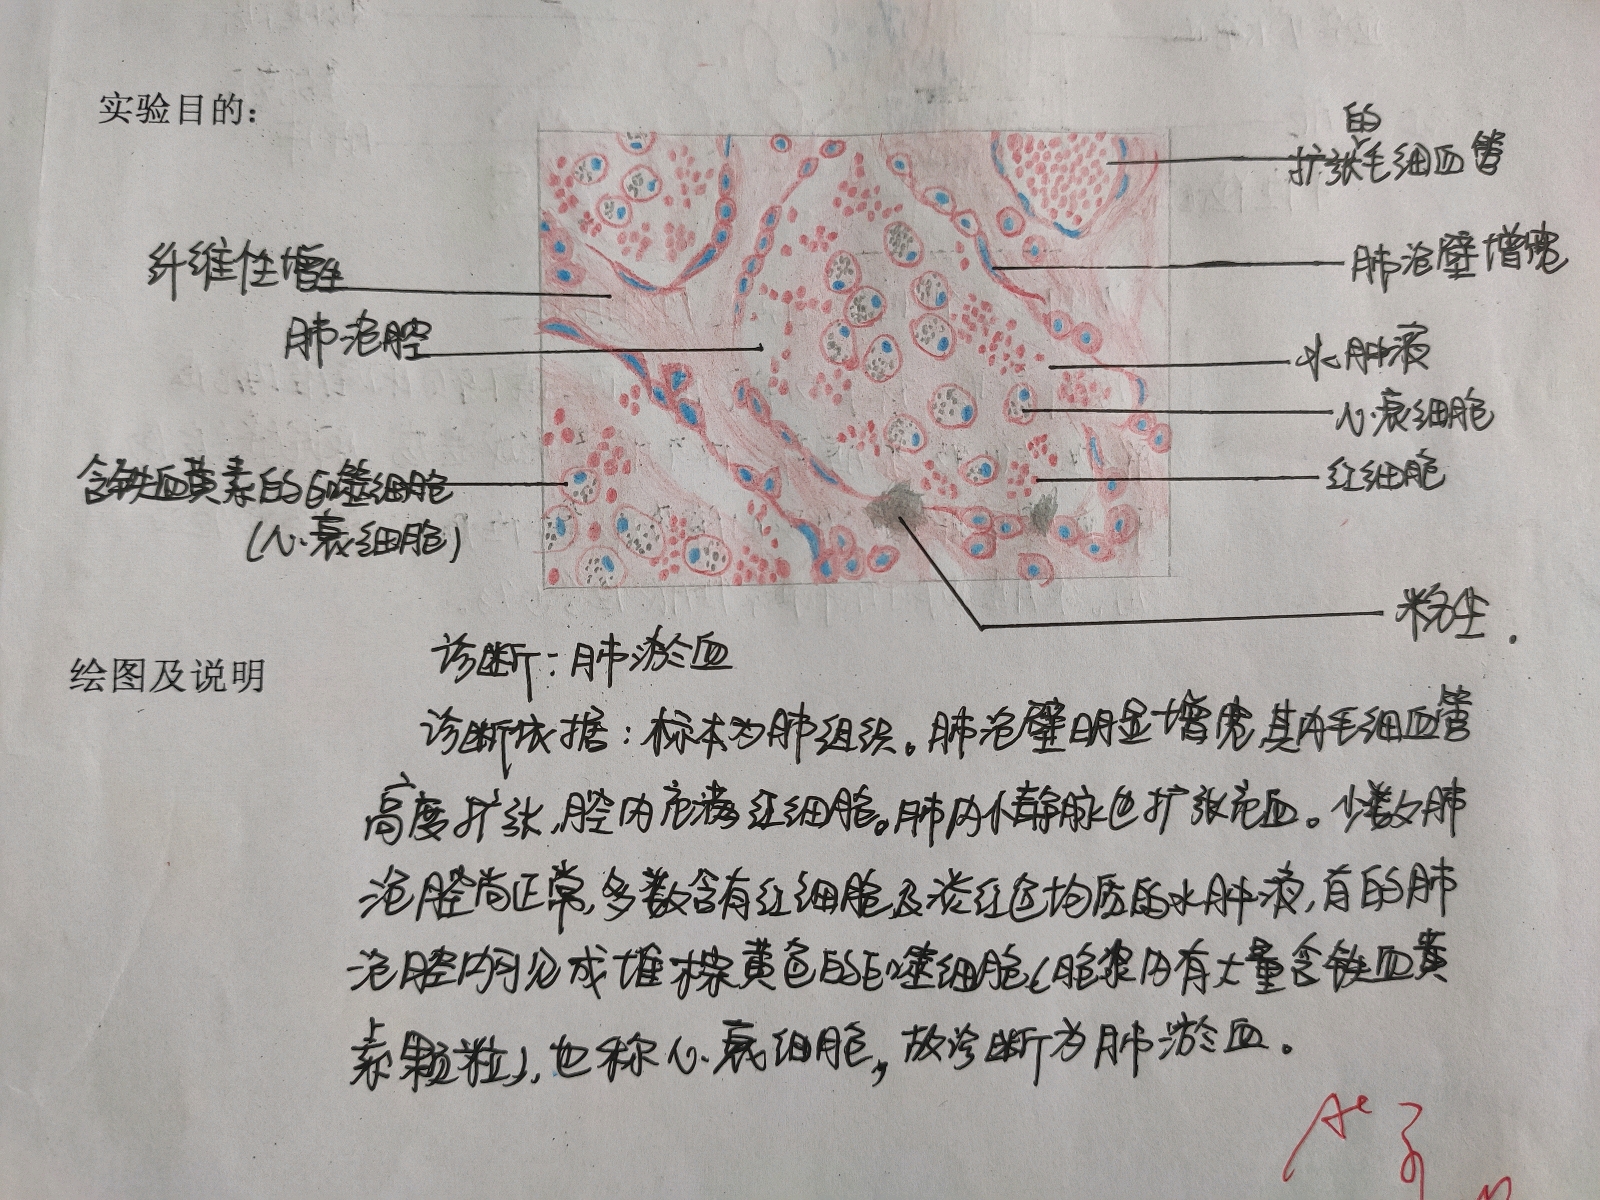 科技 学习 病理学红蓝铅笔绘图 1.皮肤高分化鳞癌 2.